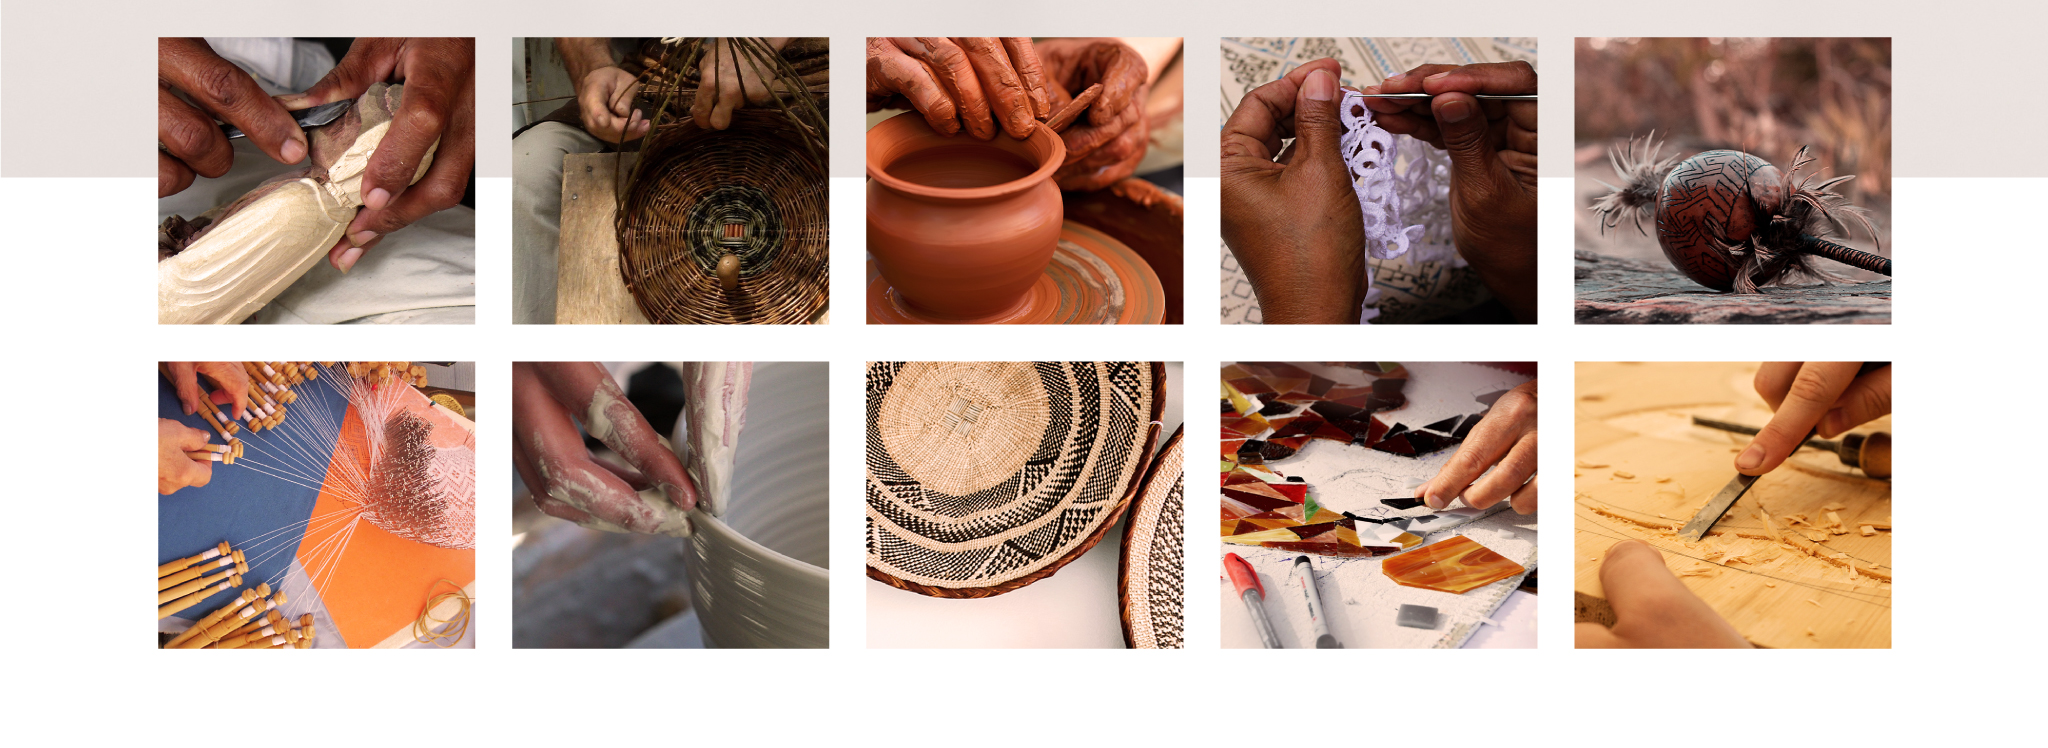 Conjunto de dez fotos que exemplificam a linguagem fotográfica do portal CRAB, focando no processo manual do artesanato.